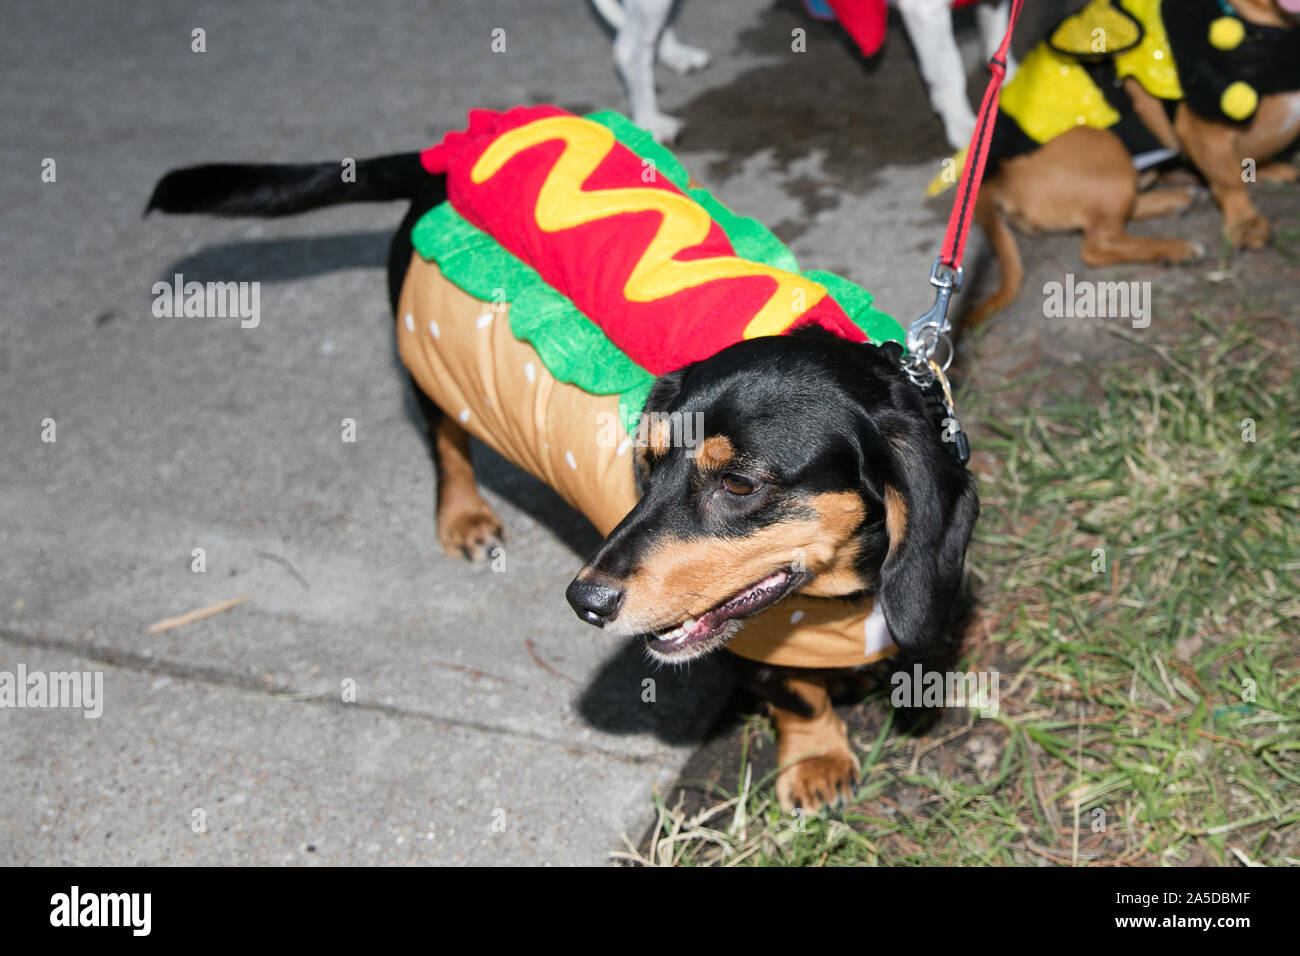 Dallas, EE.UU. 19 Oct, 2019. Un perro que viste un traje de perros calientes durante un perro festival en Richardson, un suburbio de la ciudad de Dallas, Texas, Estados Unidos, 19 de octubre, 2019. El perro festival celebrado en Richardson el sábado atrajo a muchos de los ciudadanos locales para vestir a sus perros hasta asistir al concurso de disfraces de perro. Crédito: Tian Dan/Xinhua/Alamy Live News Foto de stock